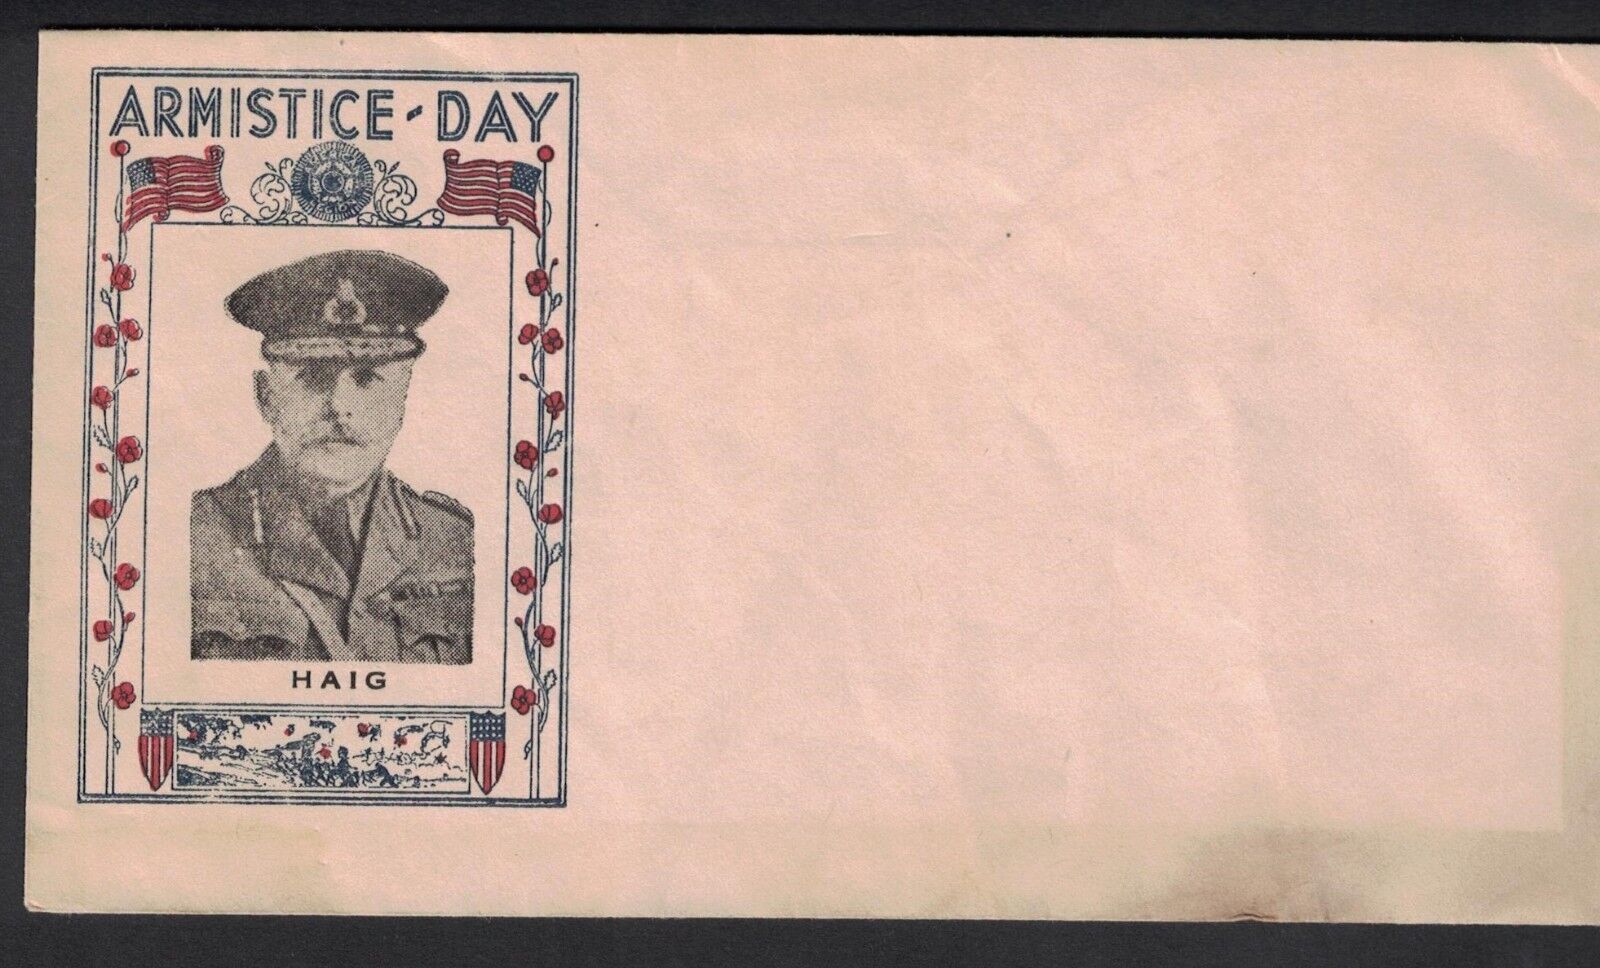 1934 Armistice Day Cover. Haig. Toning. #02 HAIG